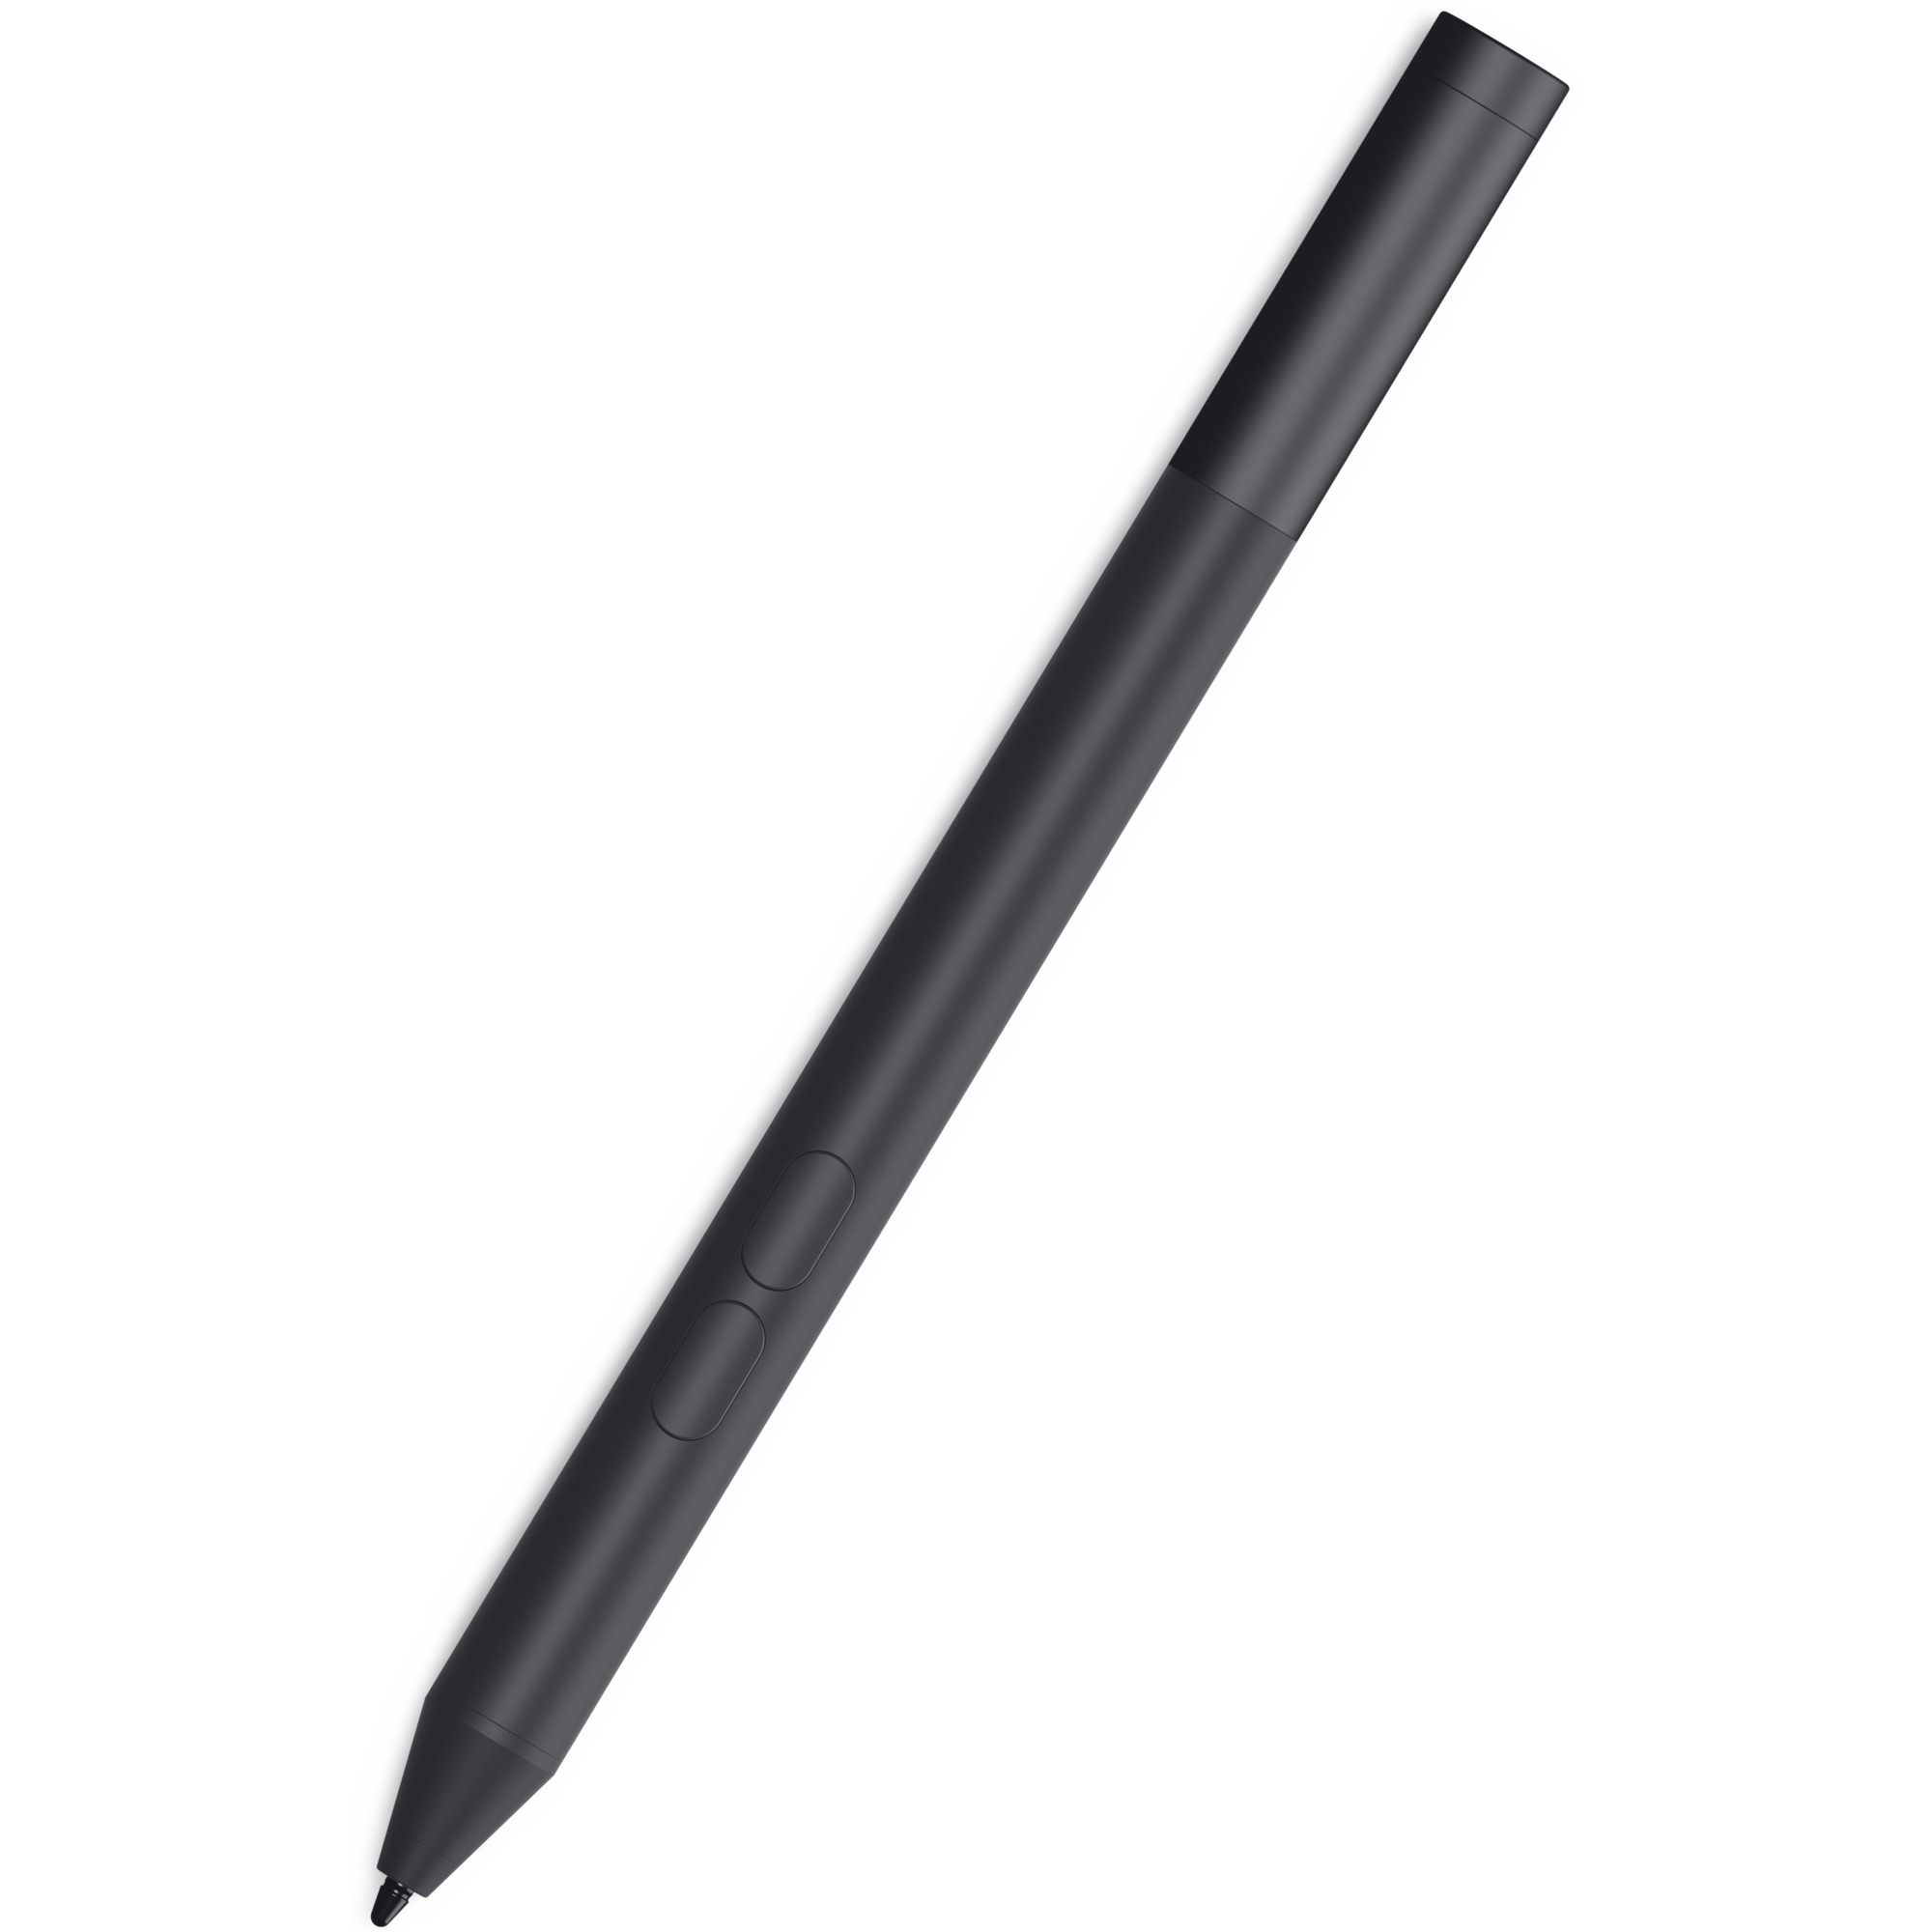 Image of Alternate - Active Pen (PN350M), Eingabestift online einkaufen bei Alternate